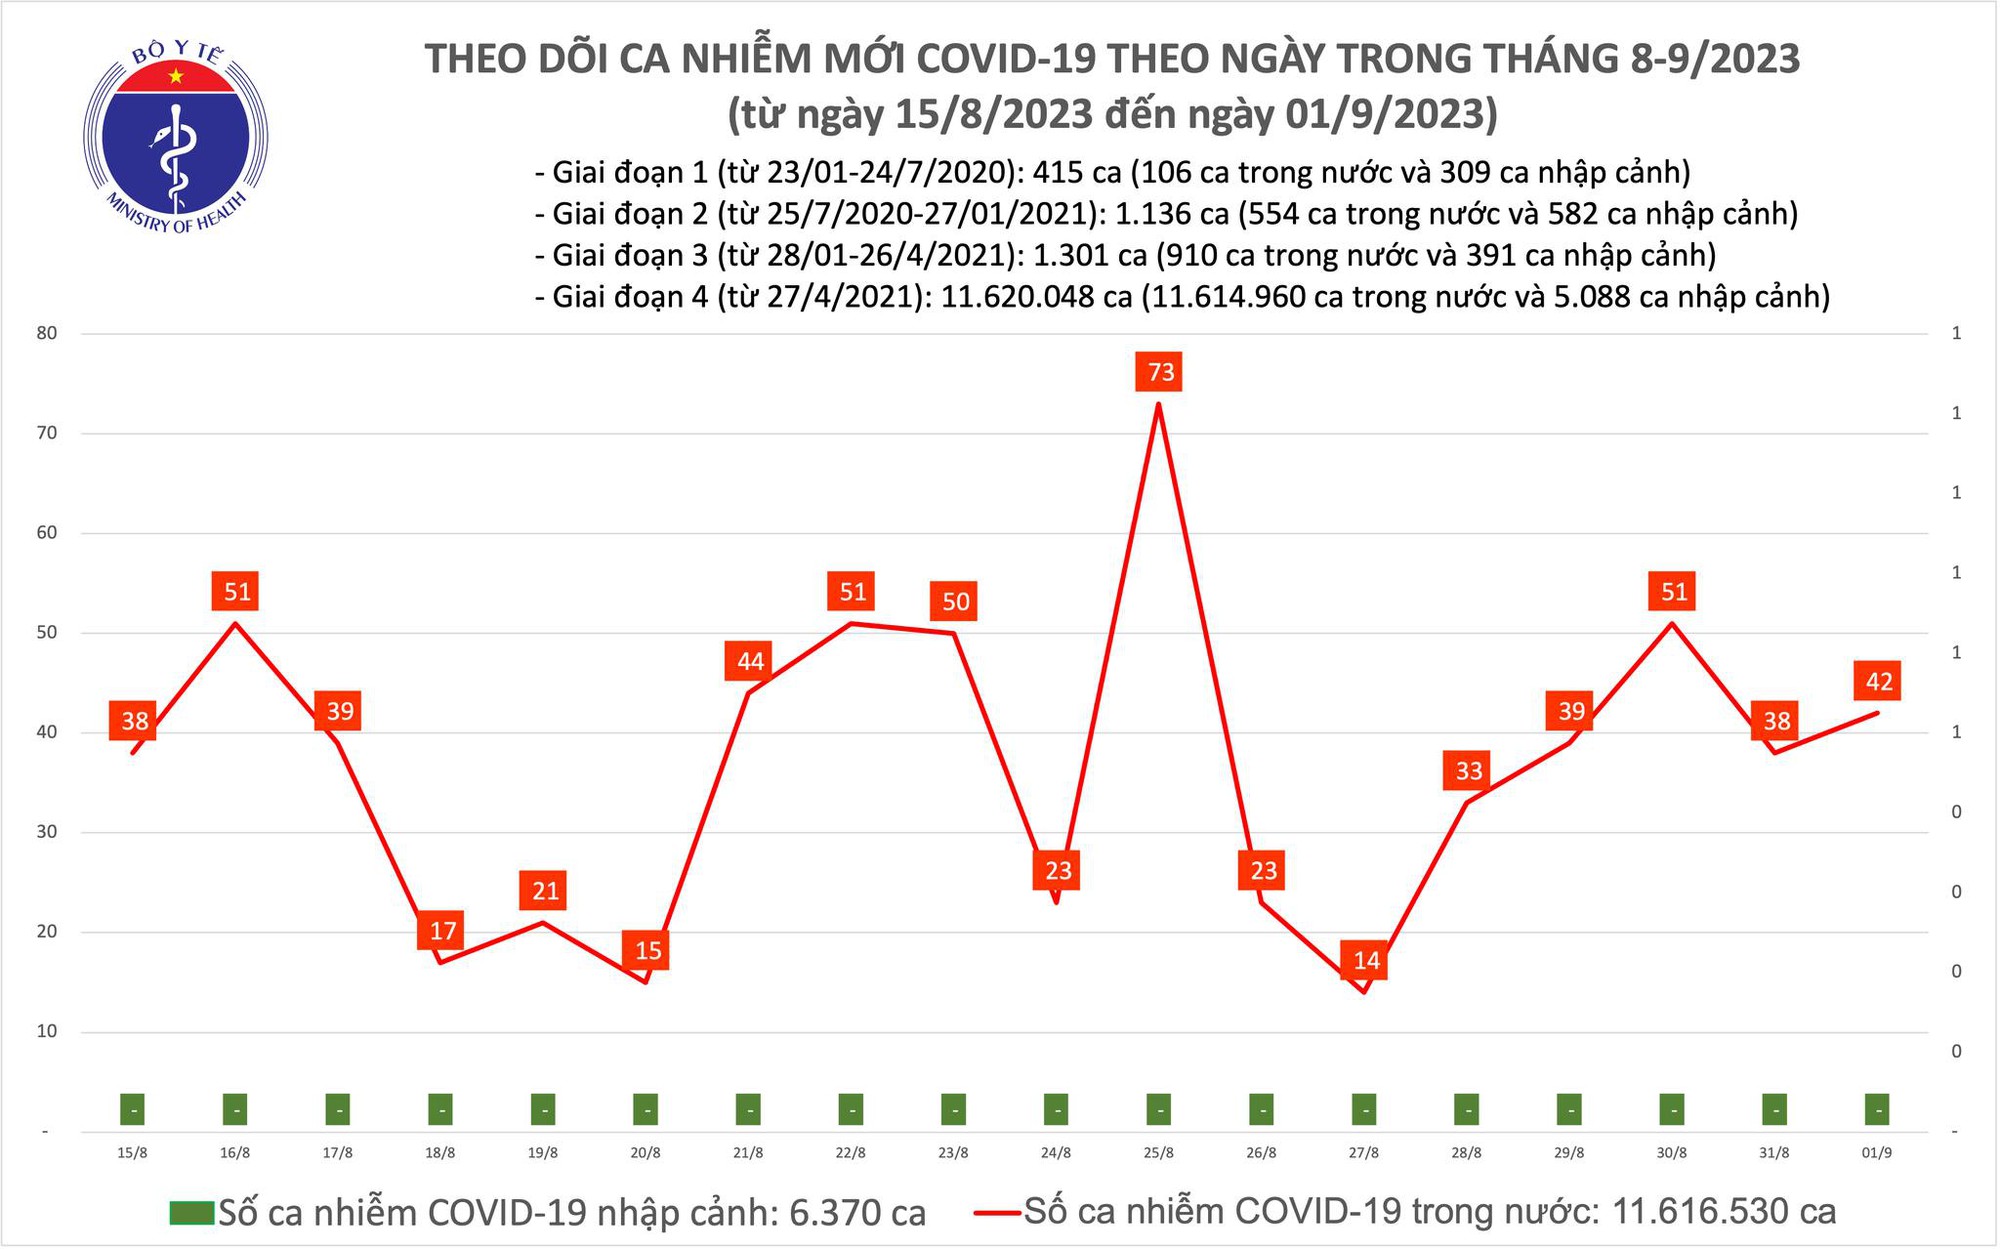 Ngày 1/9: Có 42 ca COVID-19 mới, xuất hiện trở lại bệnh nhân thở oxy - Ảnh 1.